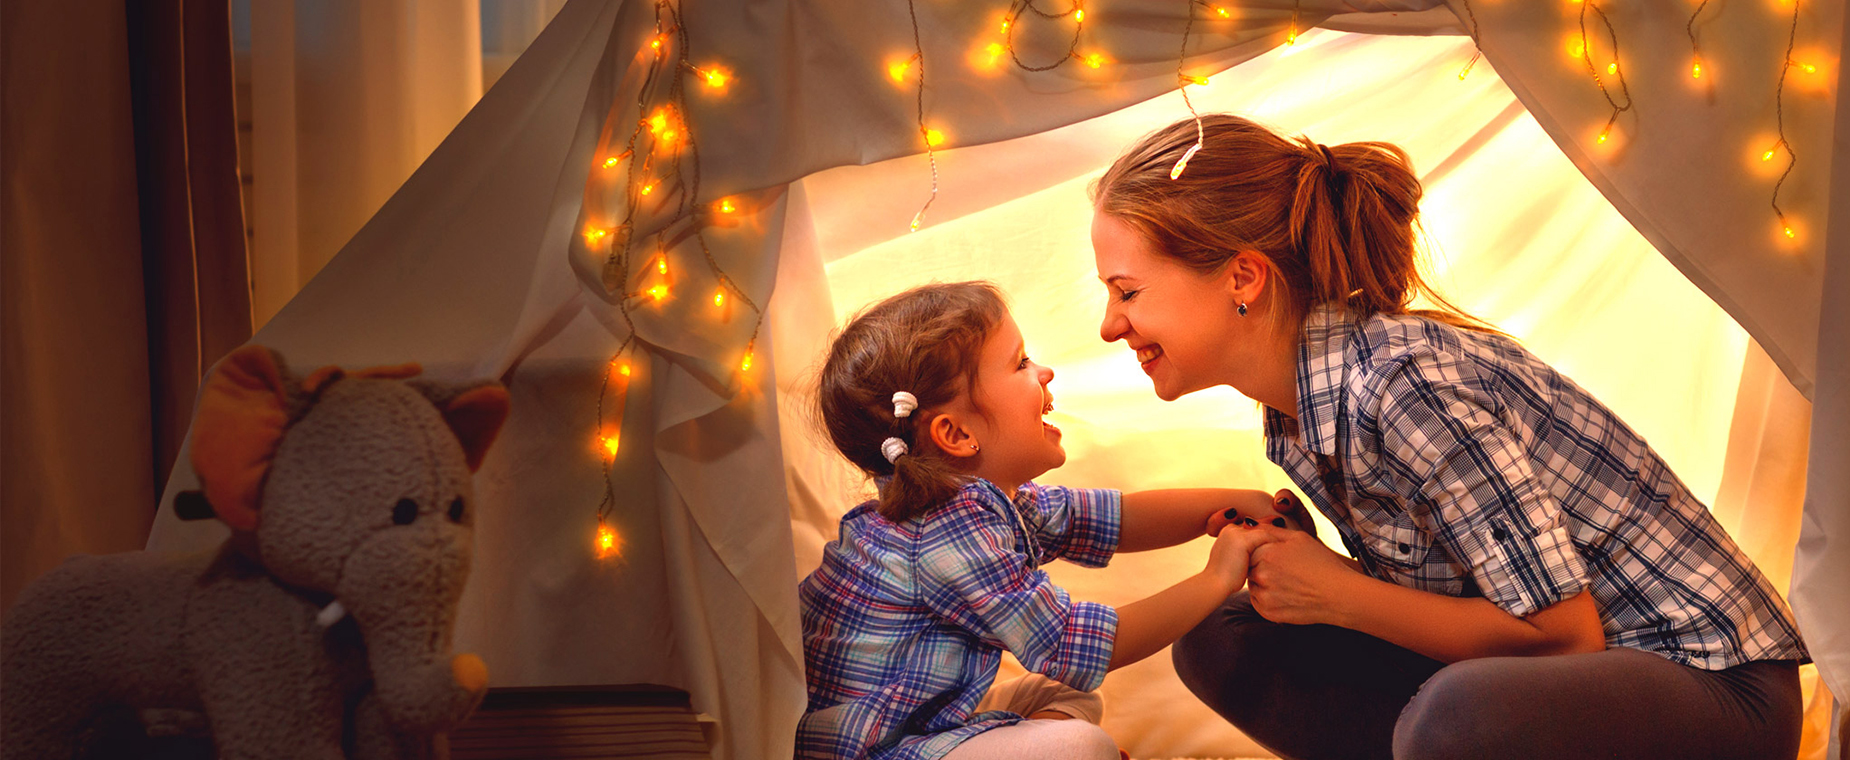 Mutter und Tochter sitzen in einem mit einer Lichterkette erleuchteten Zelt in einem Zimmer.